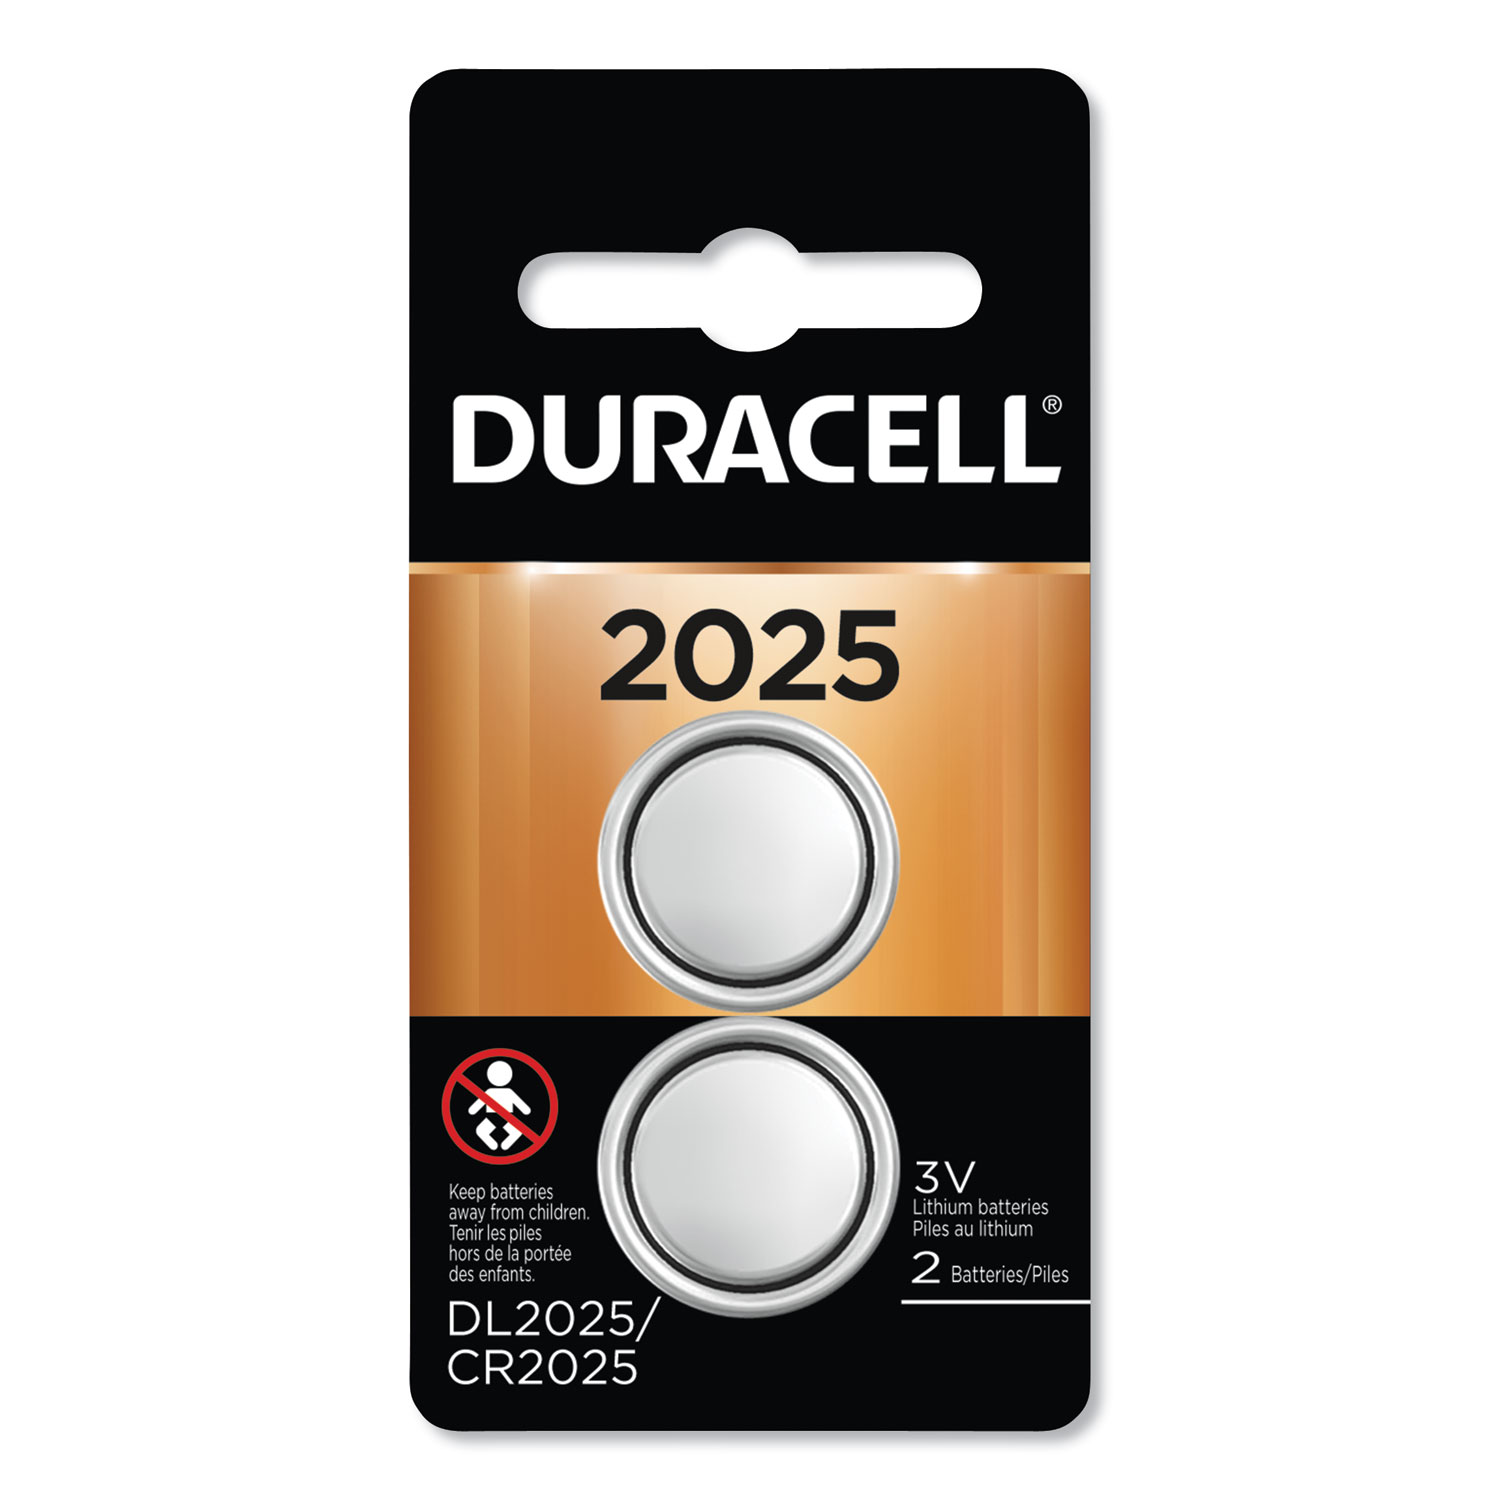  Duracell DURDL2025B2PK Lithium Coin Battery, 2025, 2/Pack (DURDL2025B2PK) 